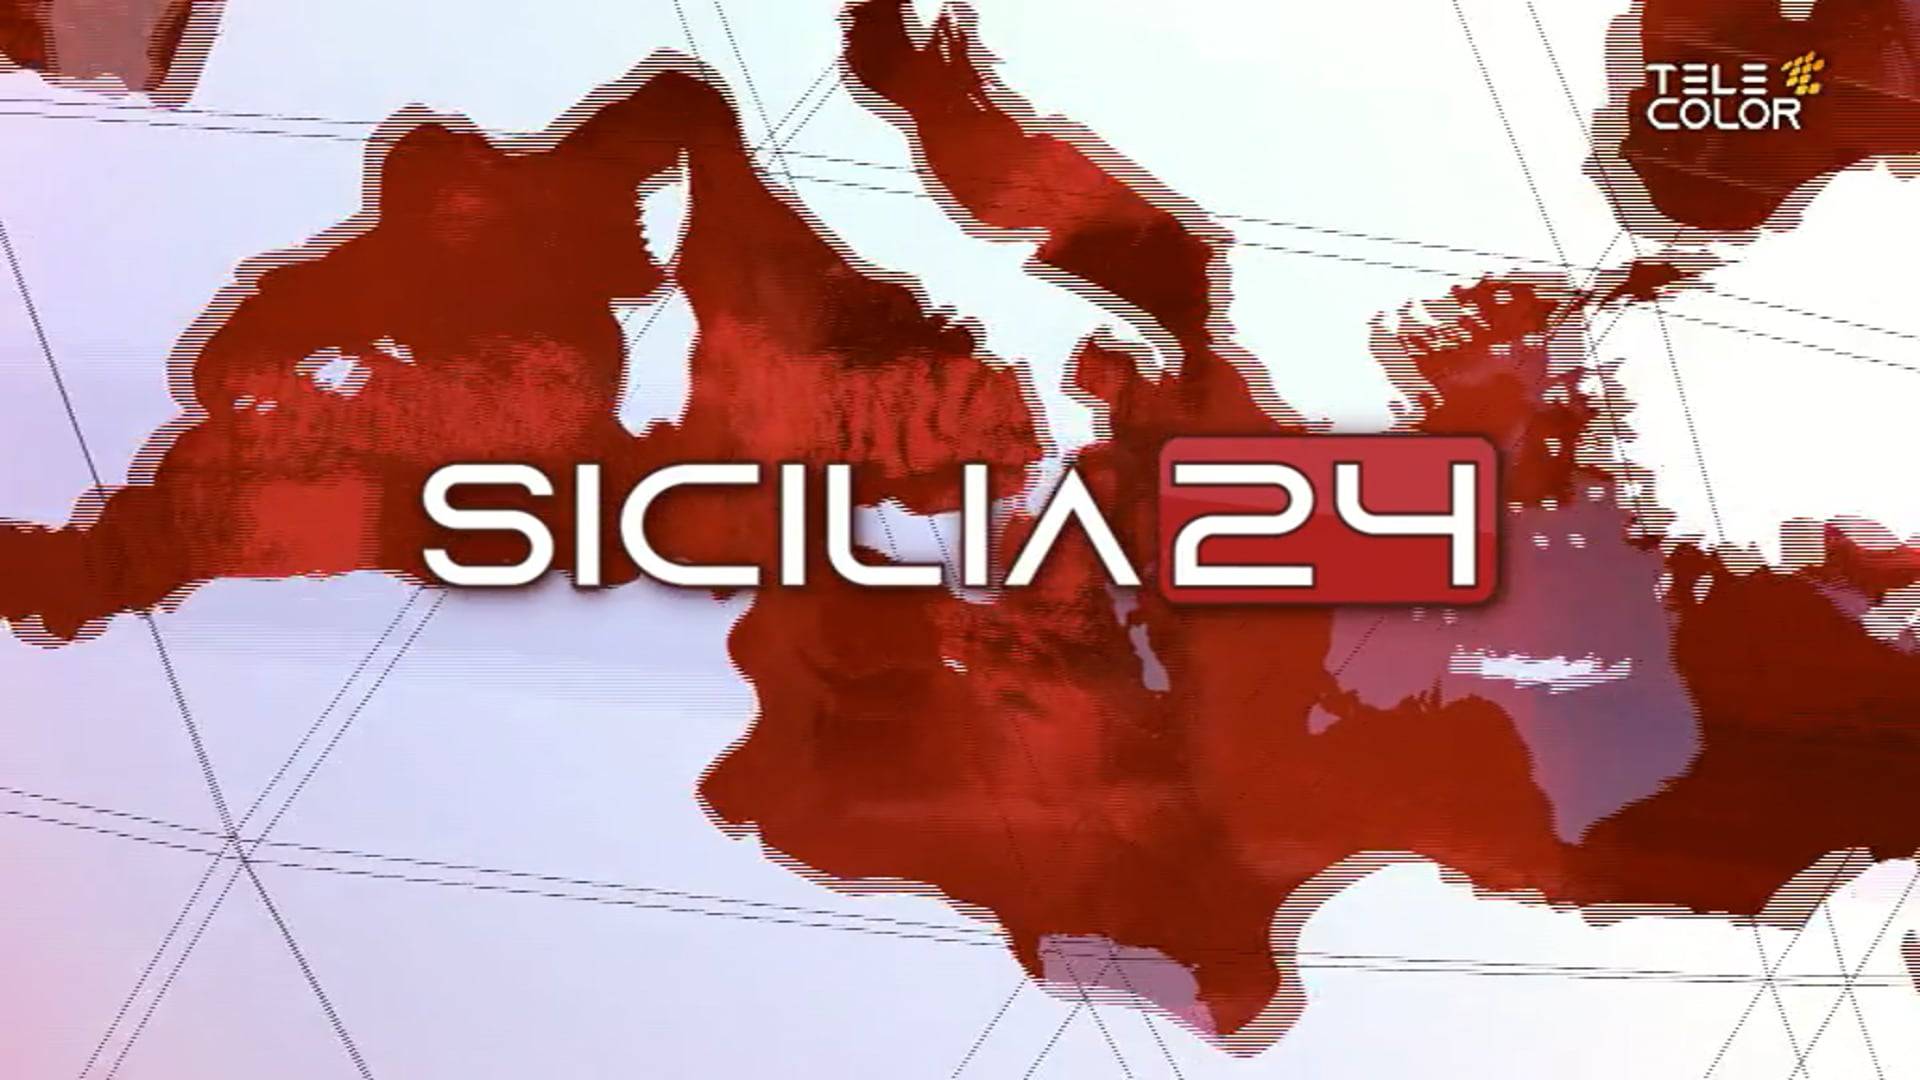 sicilia24-rassegna-stampa-03-aprile-2022-vimeo-thumbnail.jpg